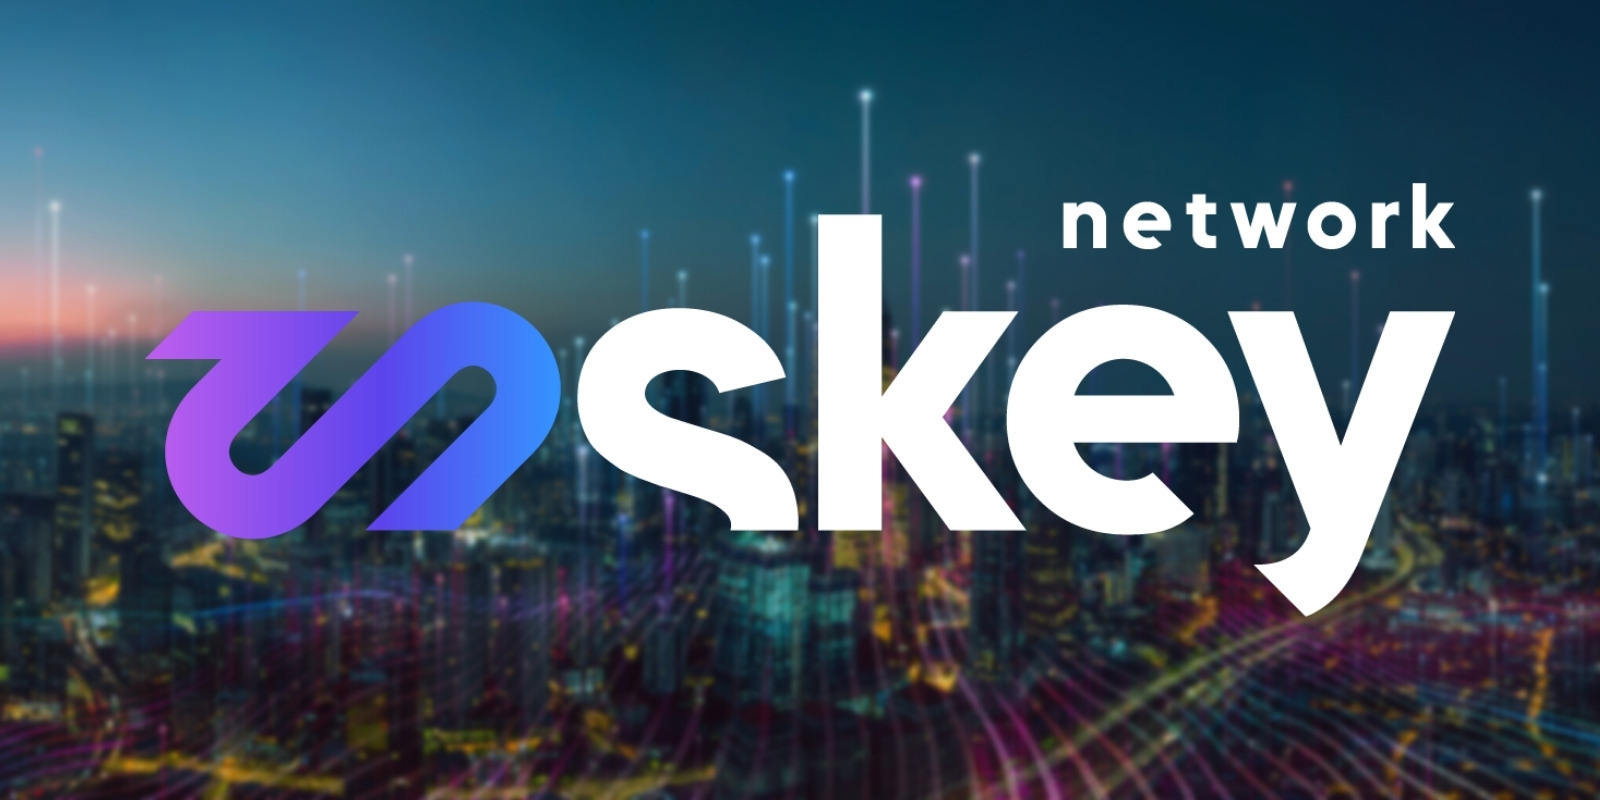 Skey Network lance son mainnet et alloue 1 million de dollars au développement de son écosystème